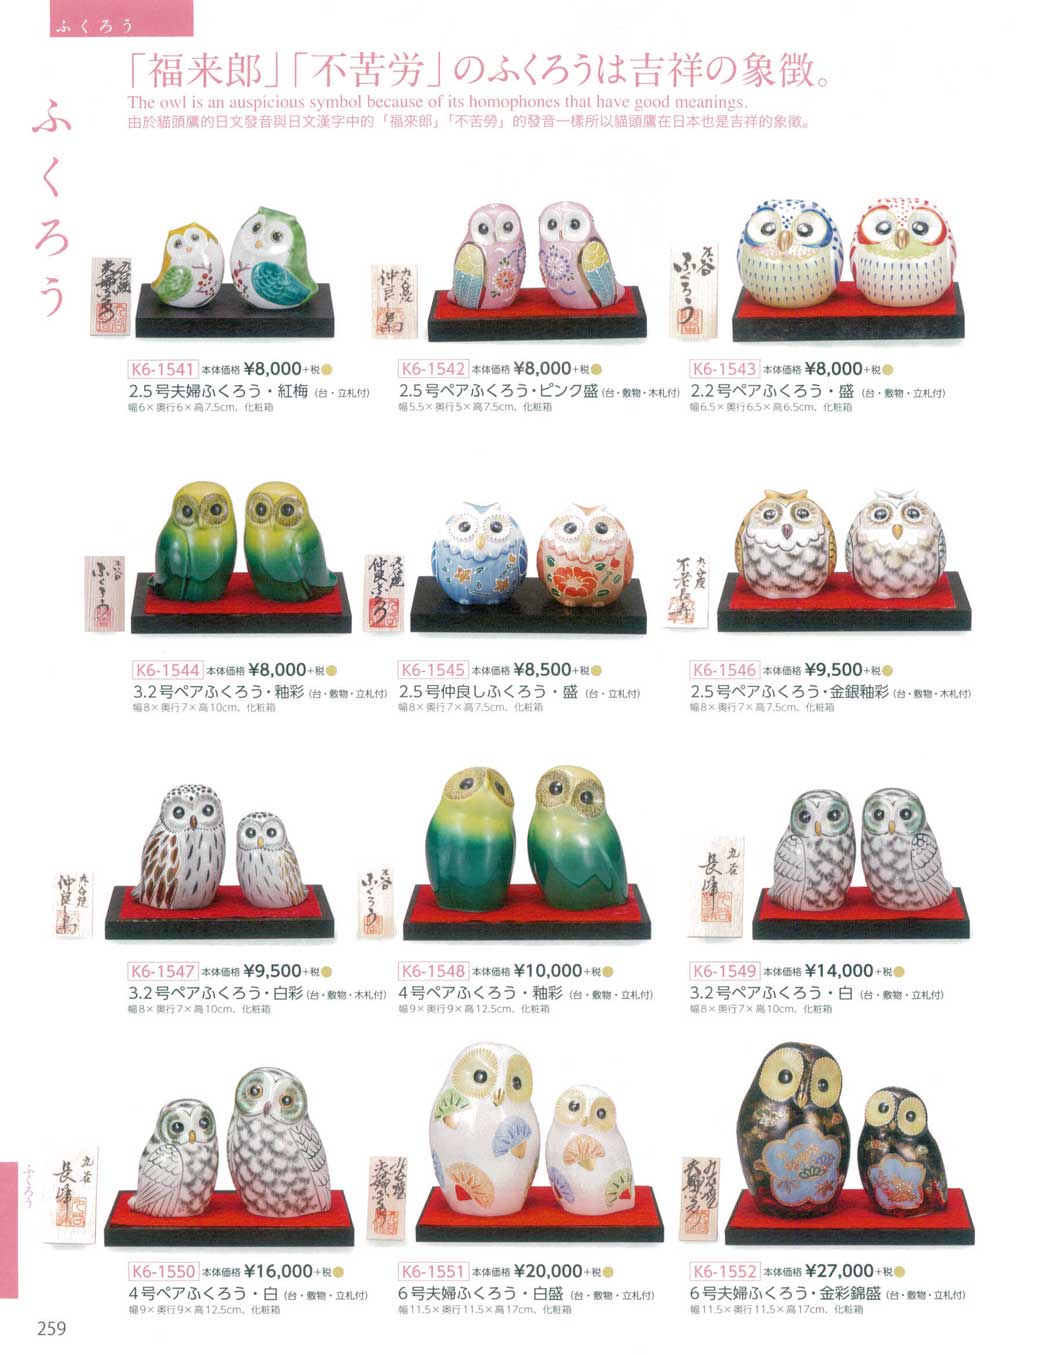 食器 ふくろうKutani-ware, Lucky Ornament, Owl 九谷焼総合カタログ 